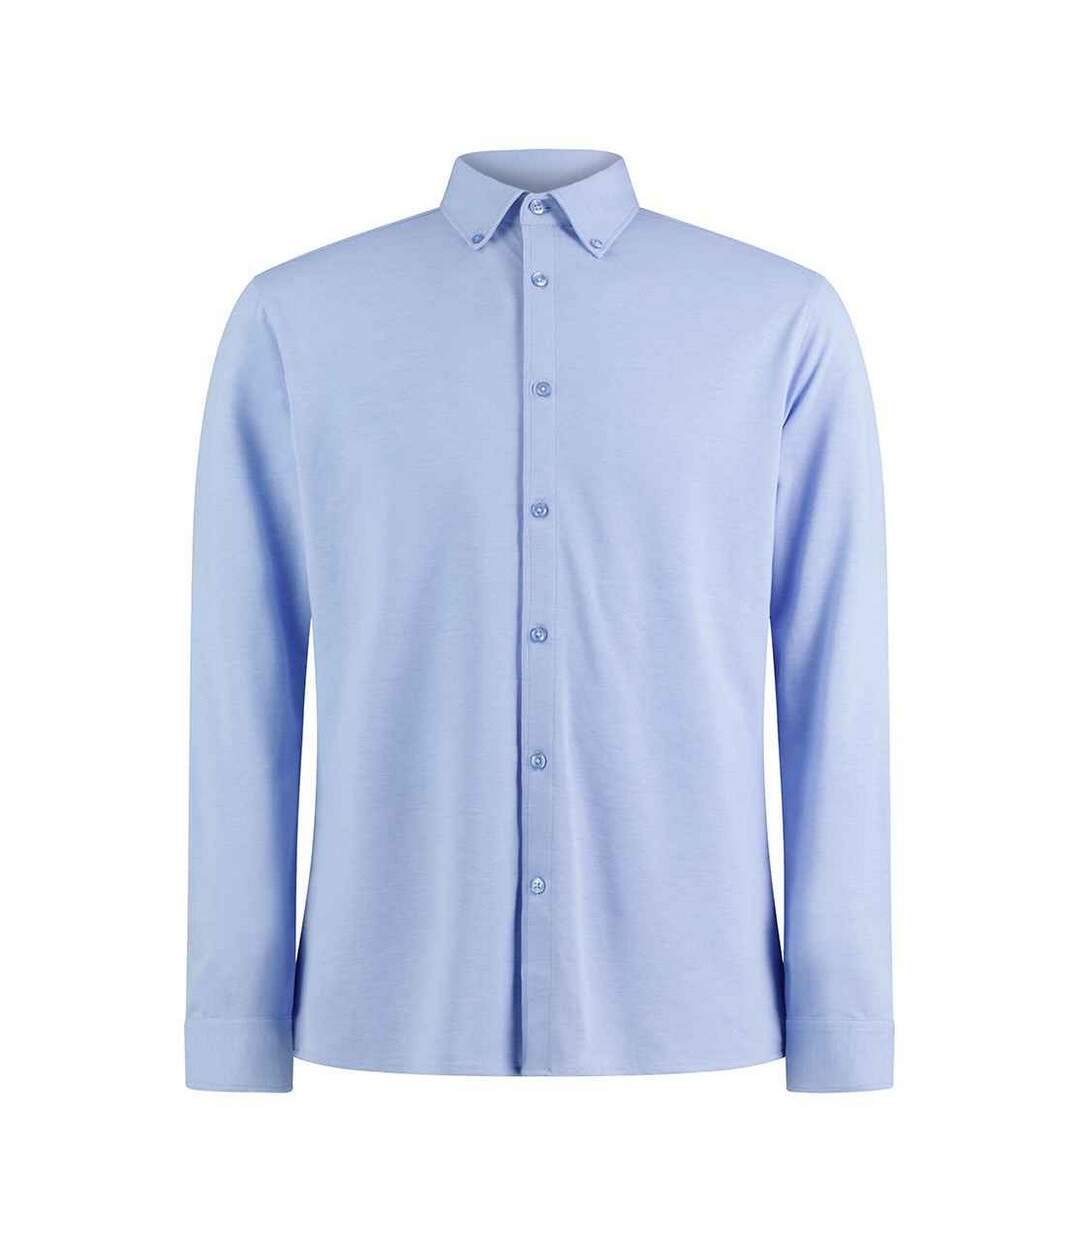 Kustom Kit Mens Pique Formal Shirt (Light Heather Blue)